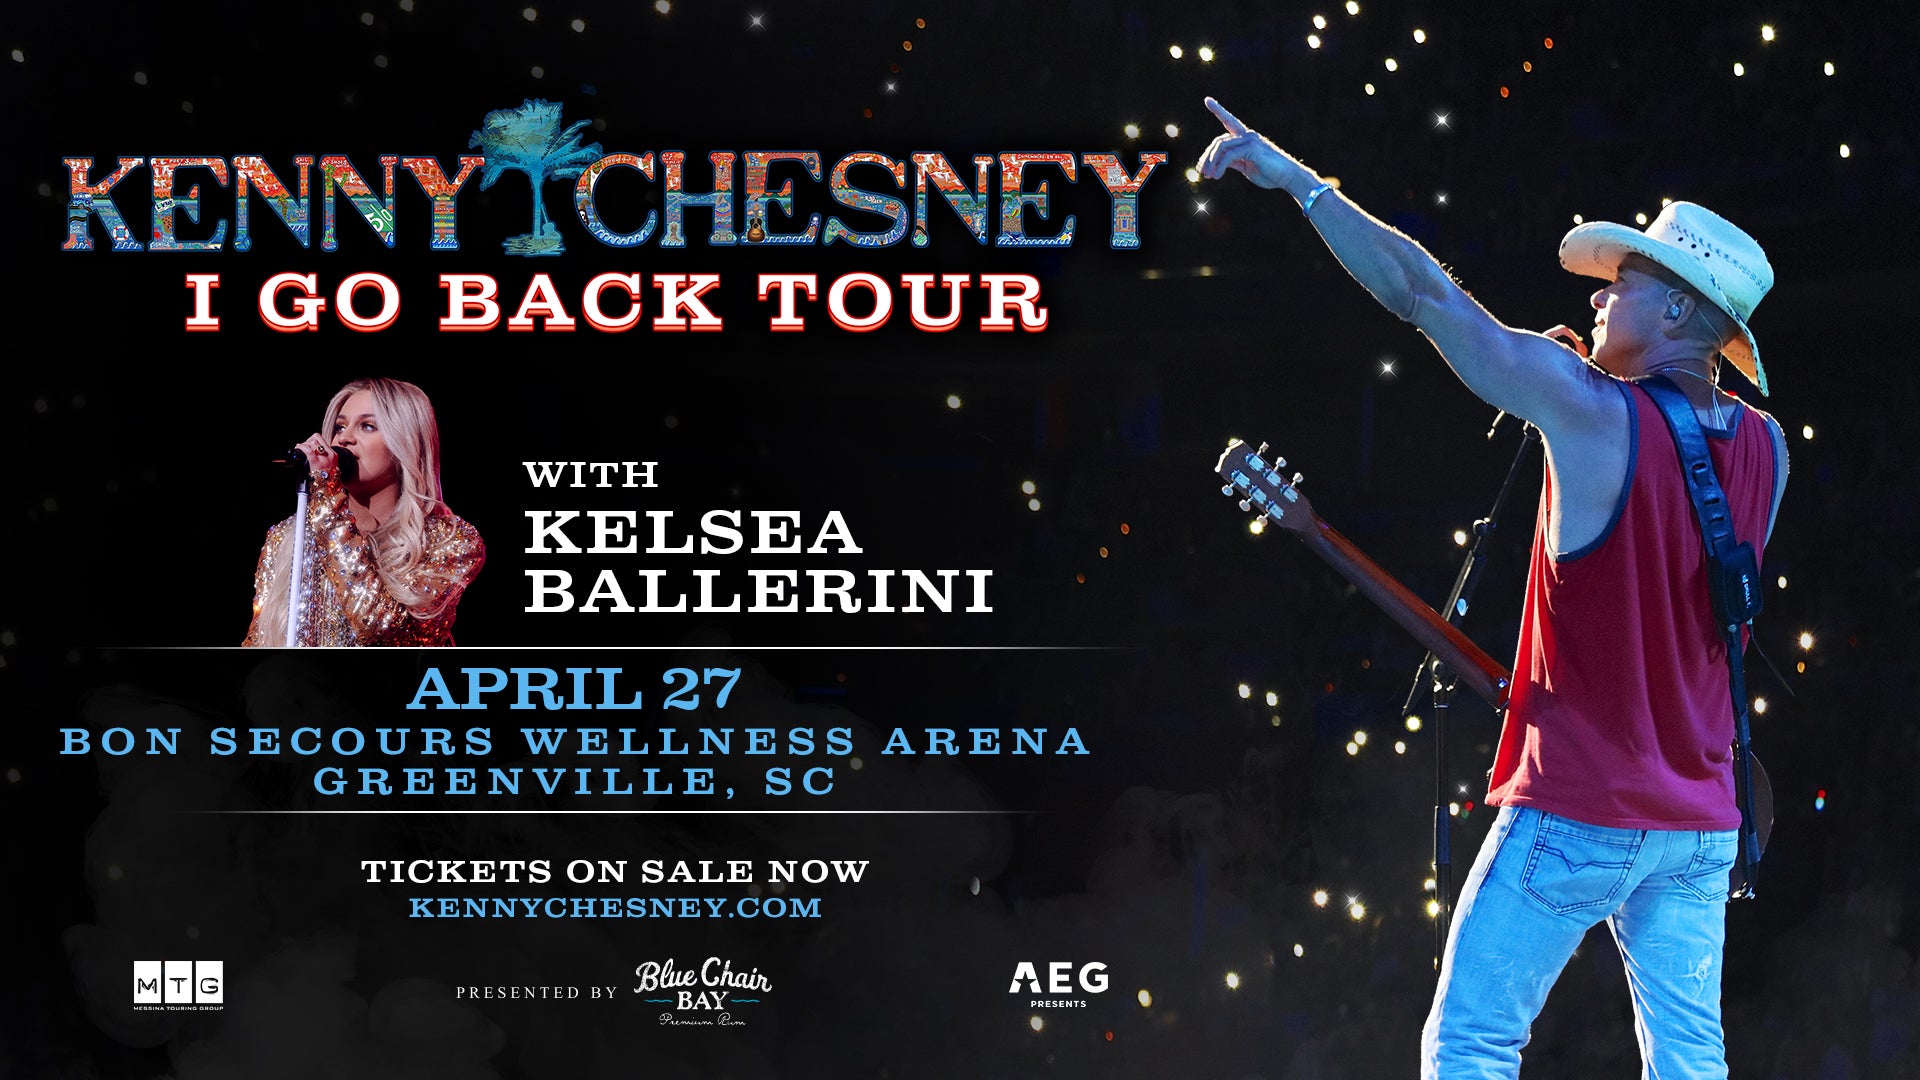 Kenny Chesney I Go Back Tour Bon Secours Wellness Arena